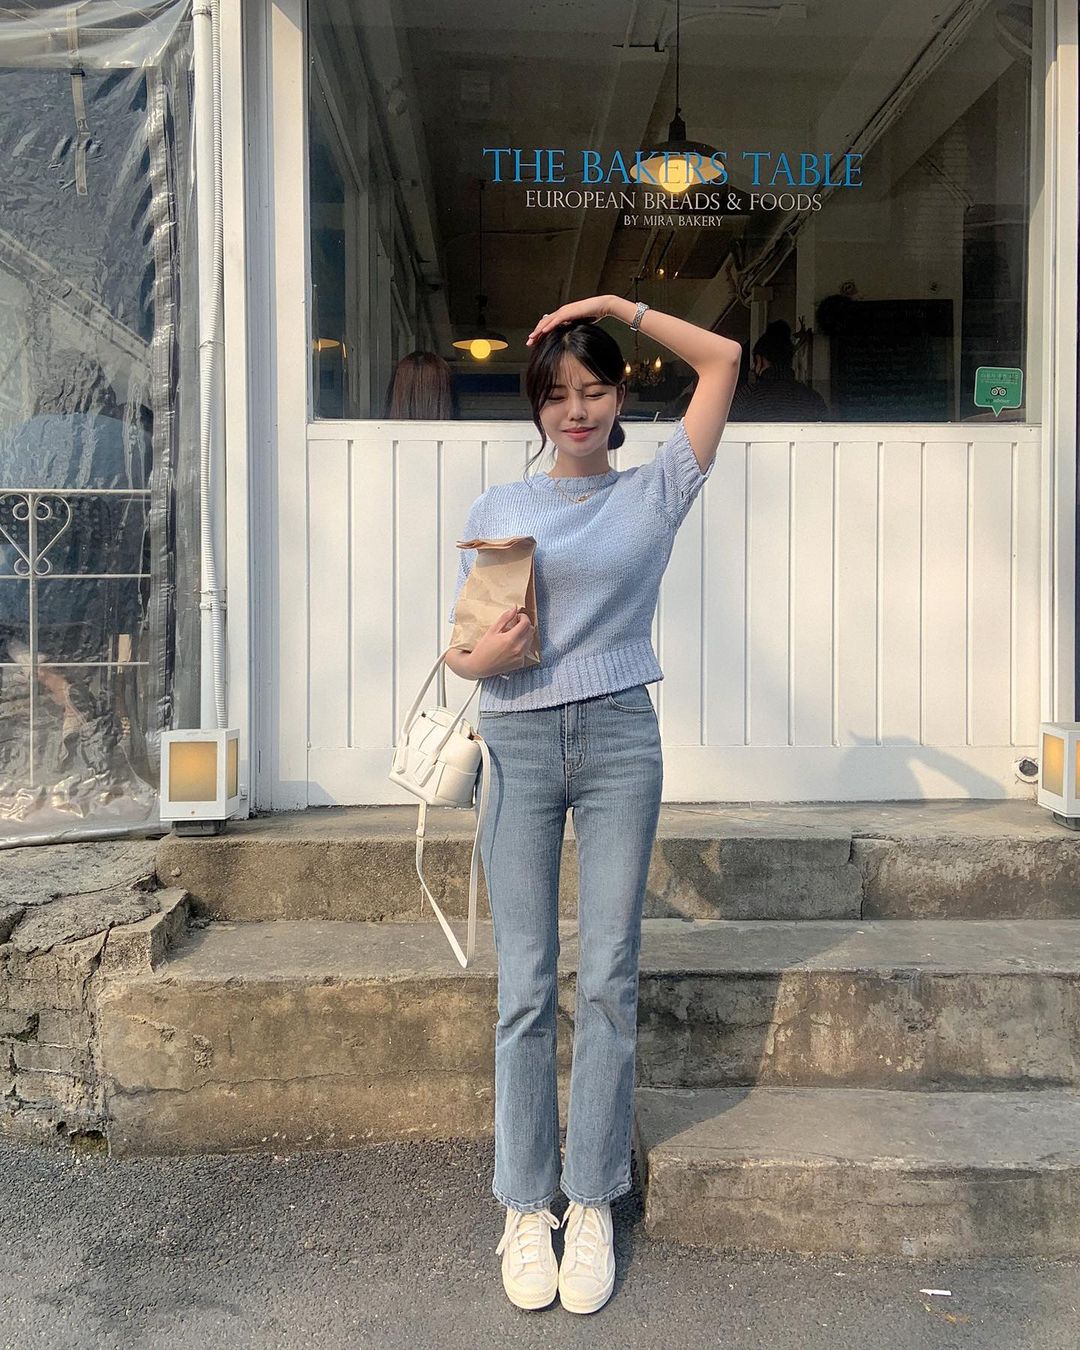 Học nàng blogger Hàn cách diện jeans “đỉnh của chóp”: Vừa hack dáng vừa thanh lịch để diện đến sở làm - Ảnh 1.